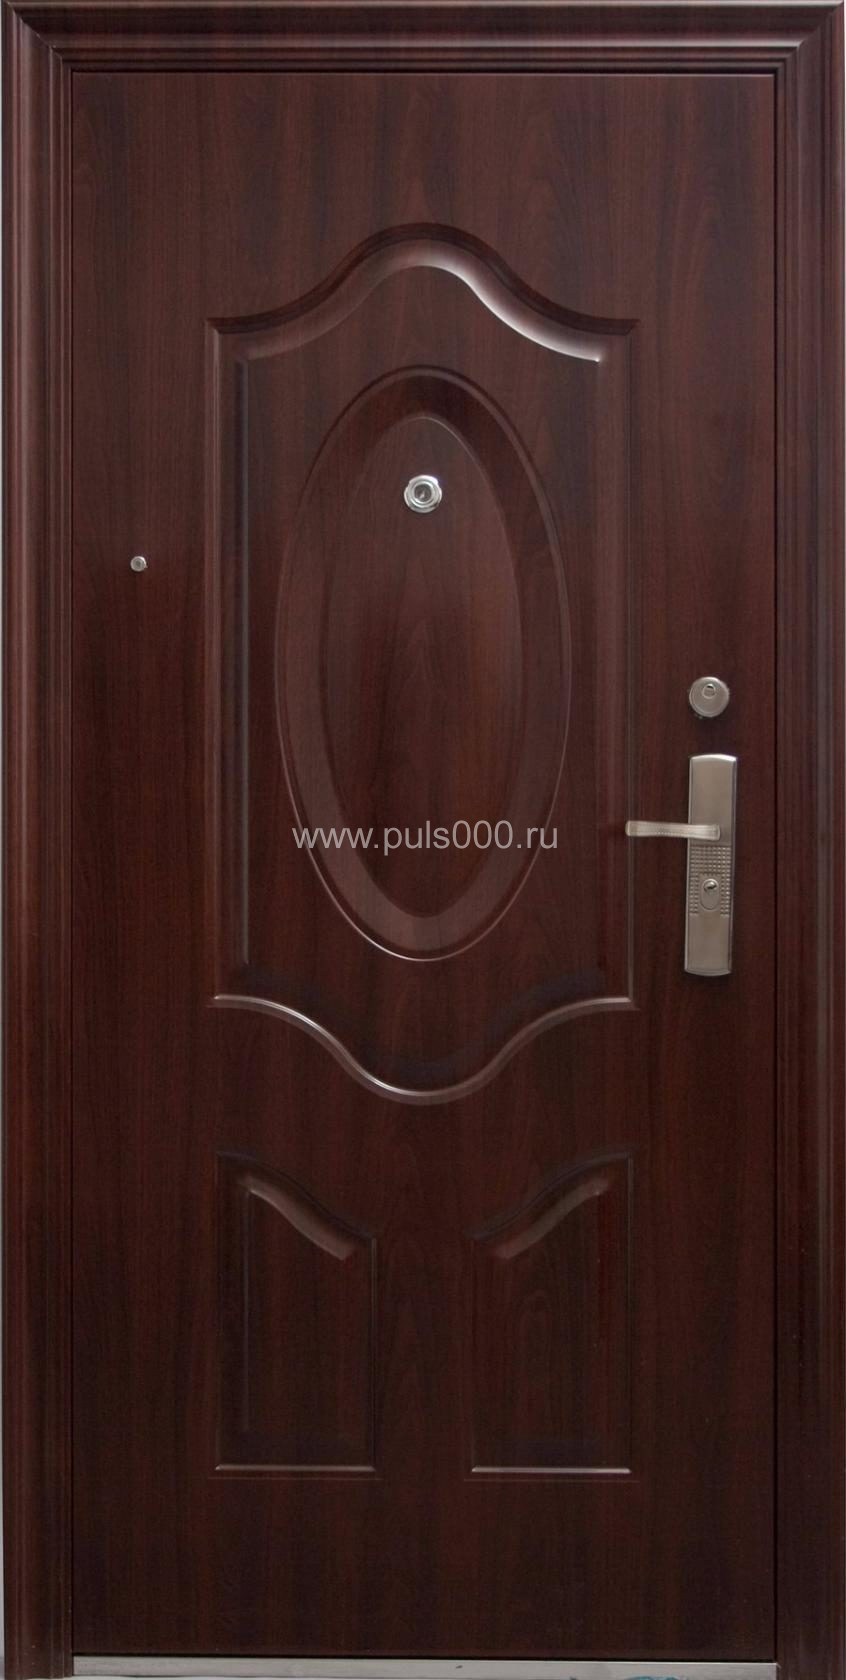 Металлическая дверь из массива дерева MS-1780 + МДФ, цена 61 000  руб.